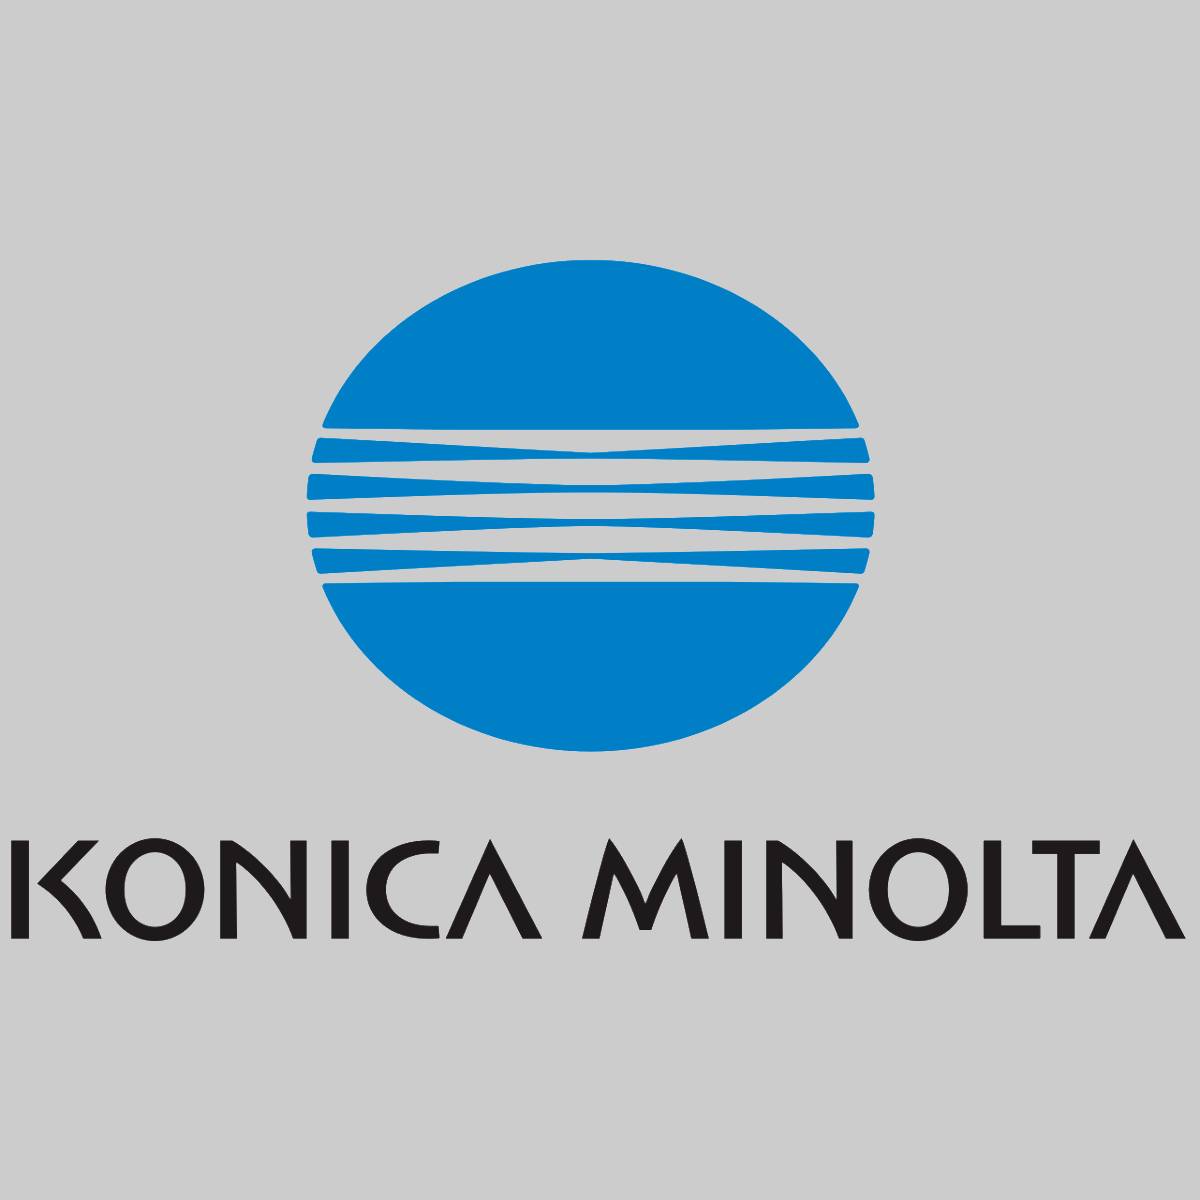 "Original Konica Minolta Resttonerbehälter A0XP-WY5 für Bizhub C552 C652 C752 75